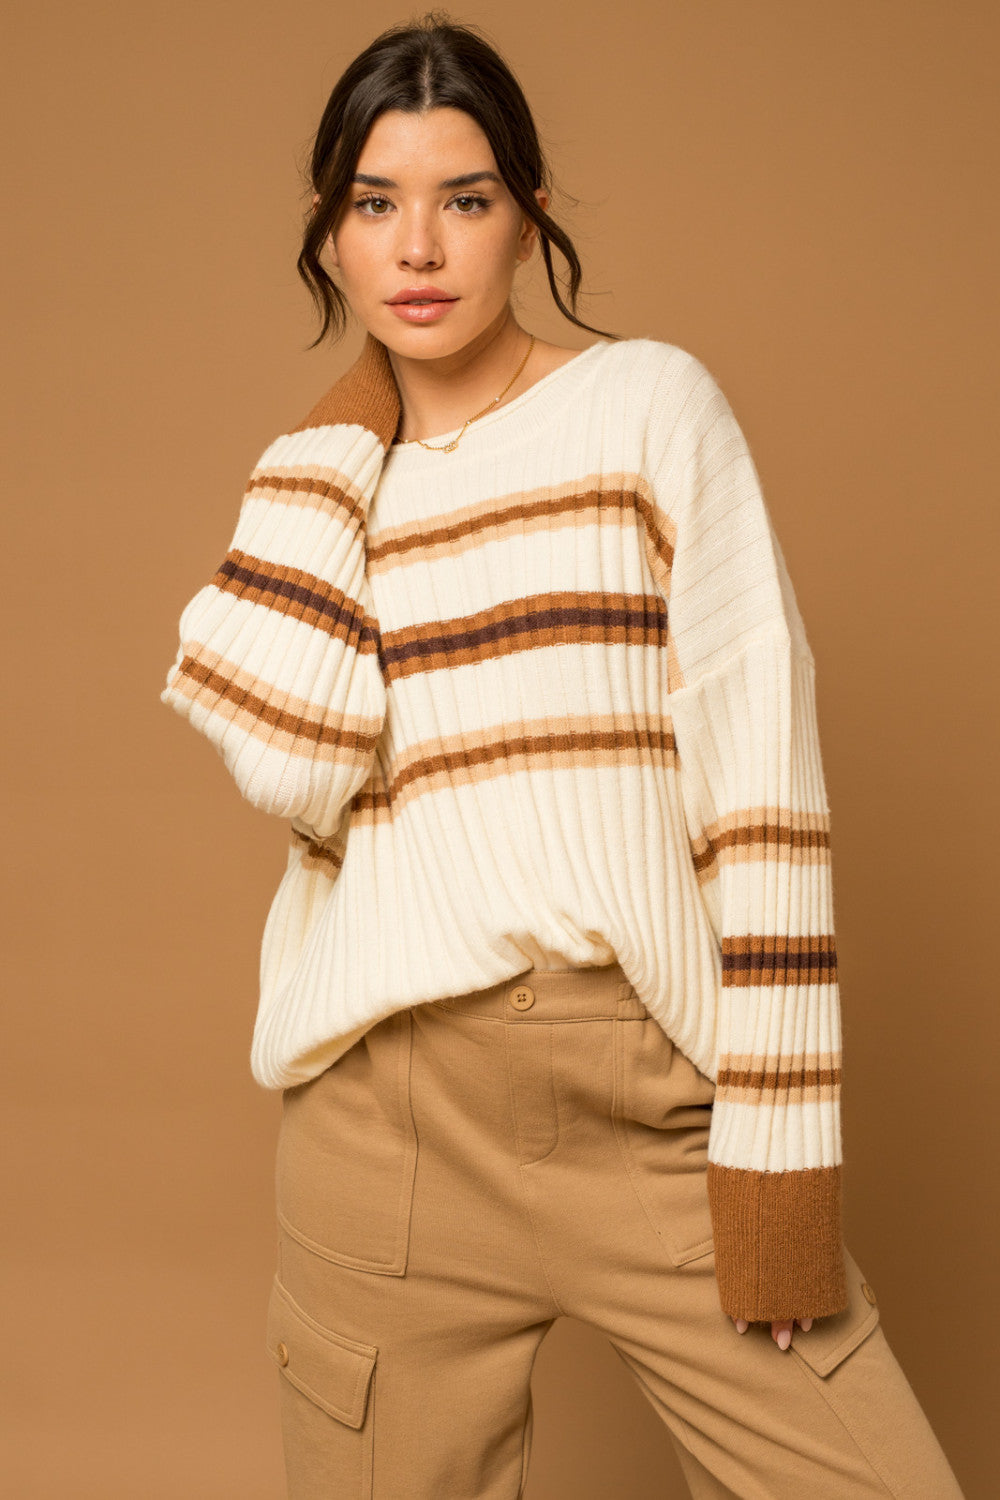 Fireside Striped Sweater